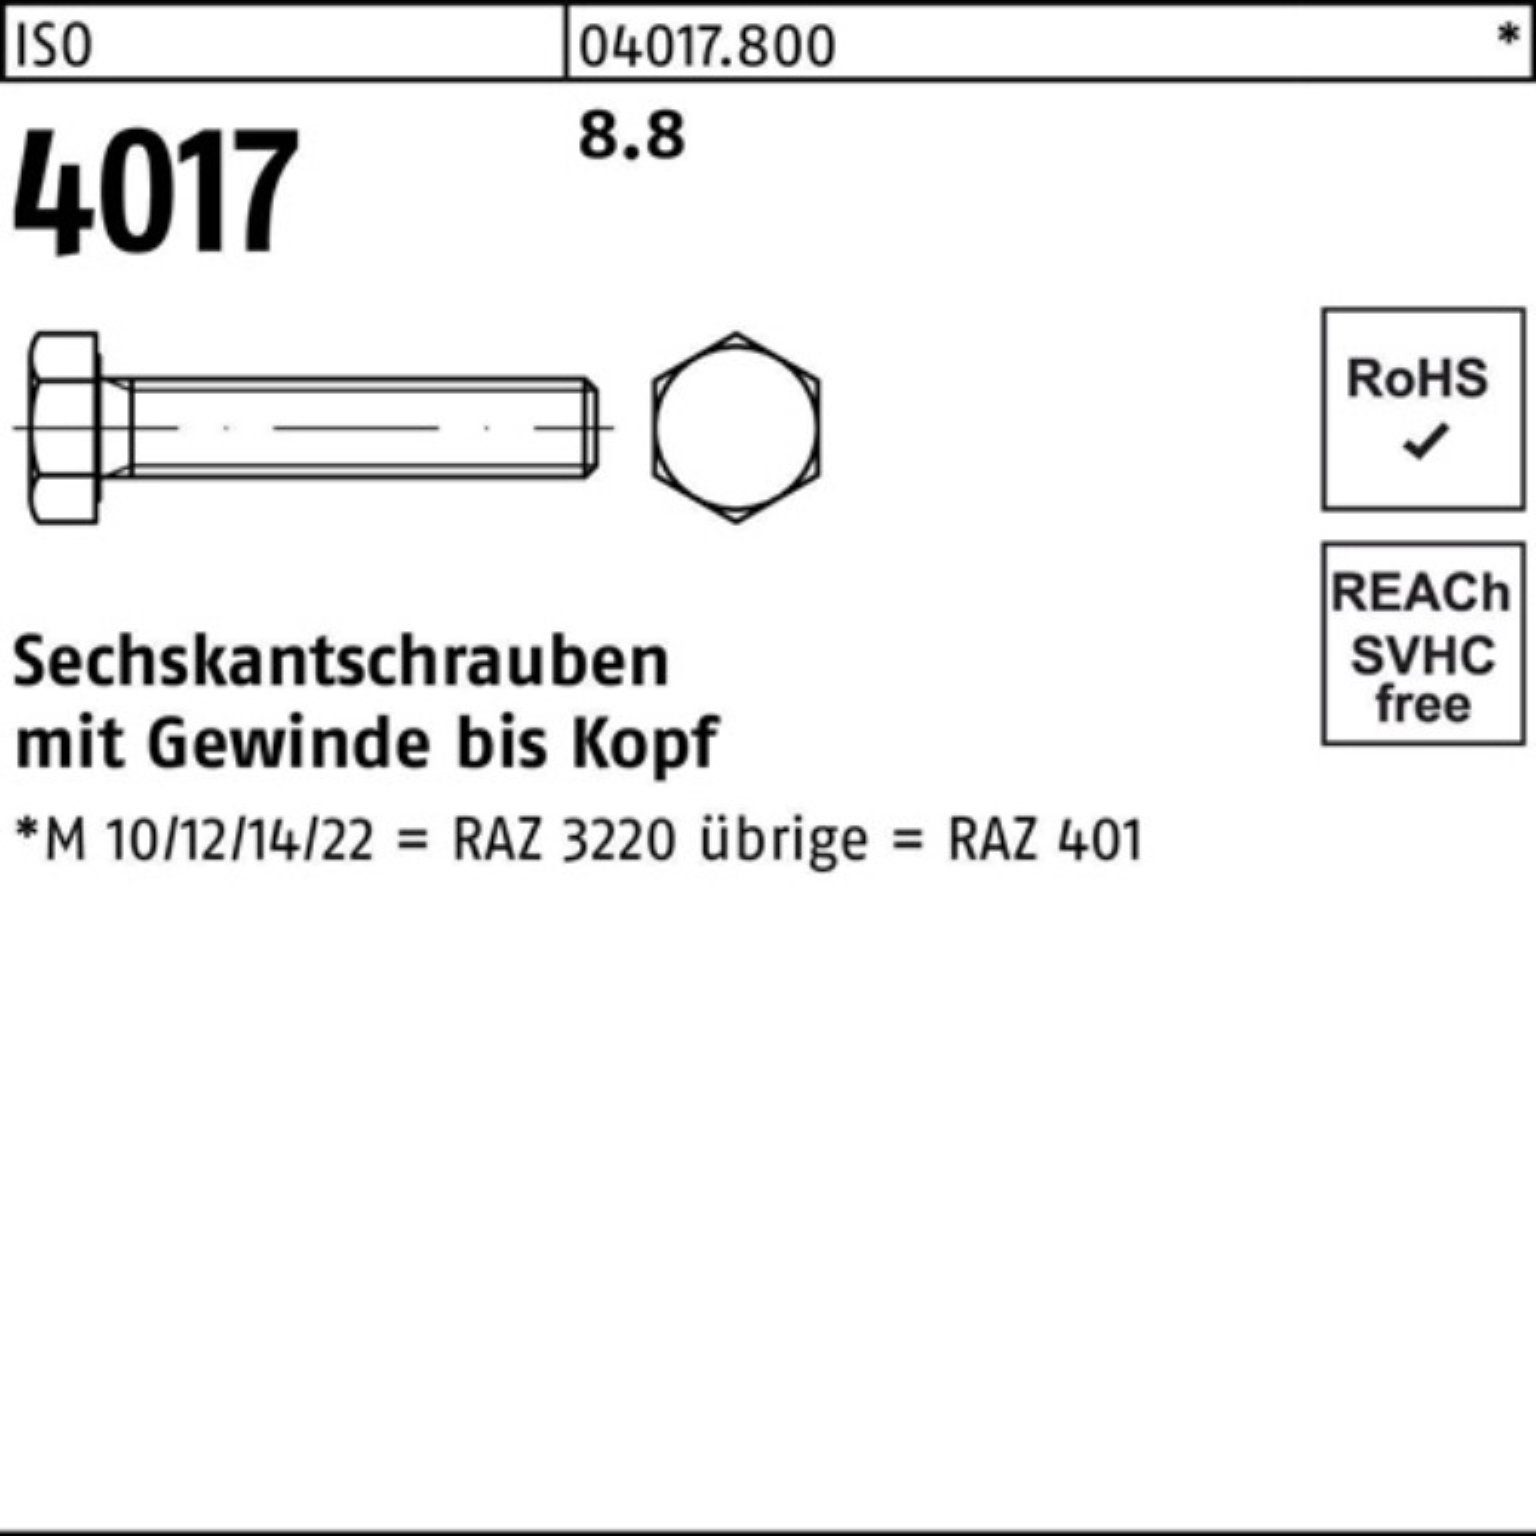 Bufab Sechskantschraube 200er Pack Sechskantschraube ISO 401 M6x ISO 8.8 Stück 4017 200 VG 60